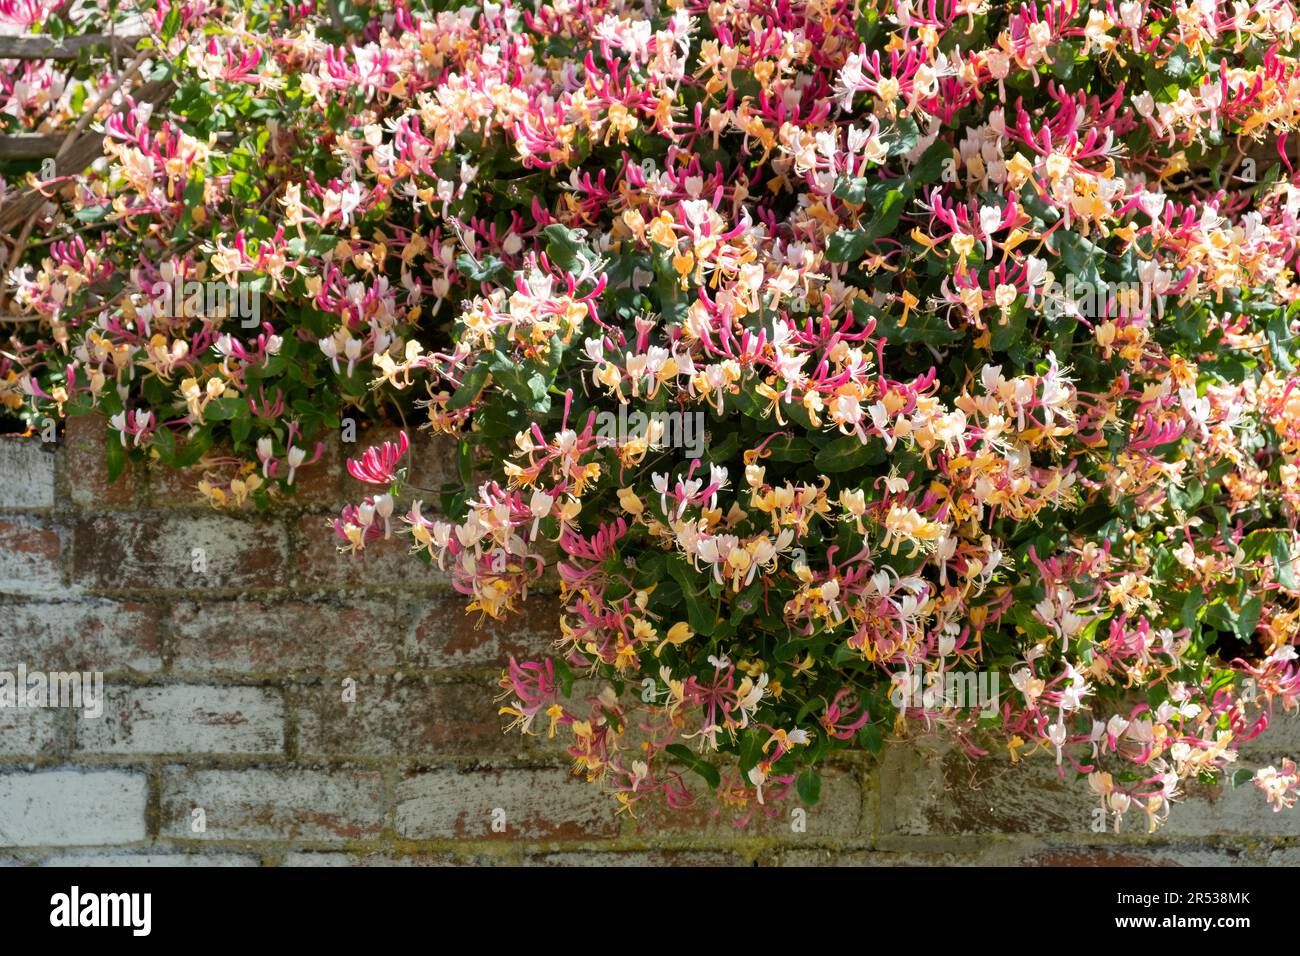 Una gran madreselva común impresionante, Lonicera periclymenum, una popular planta trepadora de jardín en plena floración y cubierta de cabezas de flores Foto de stock